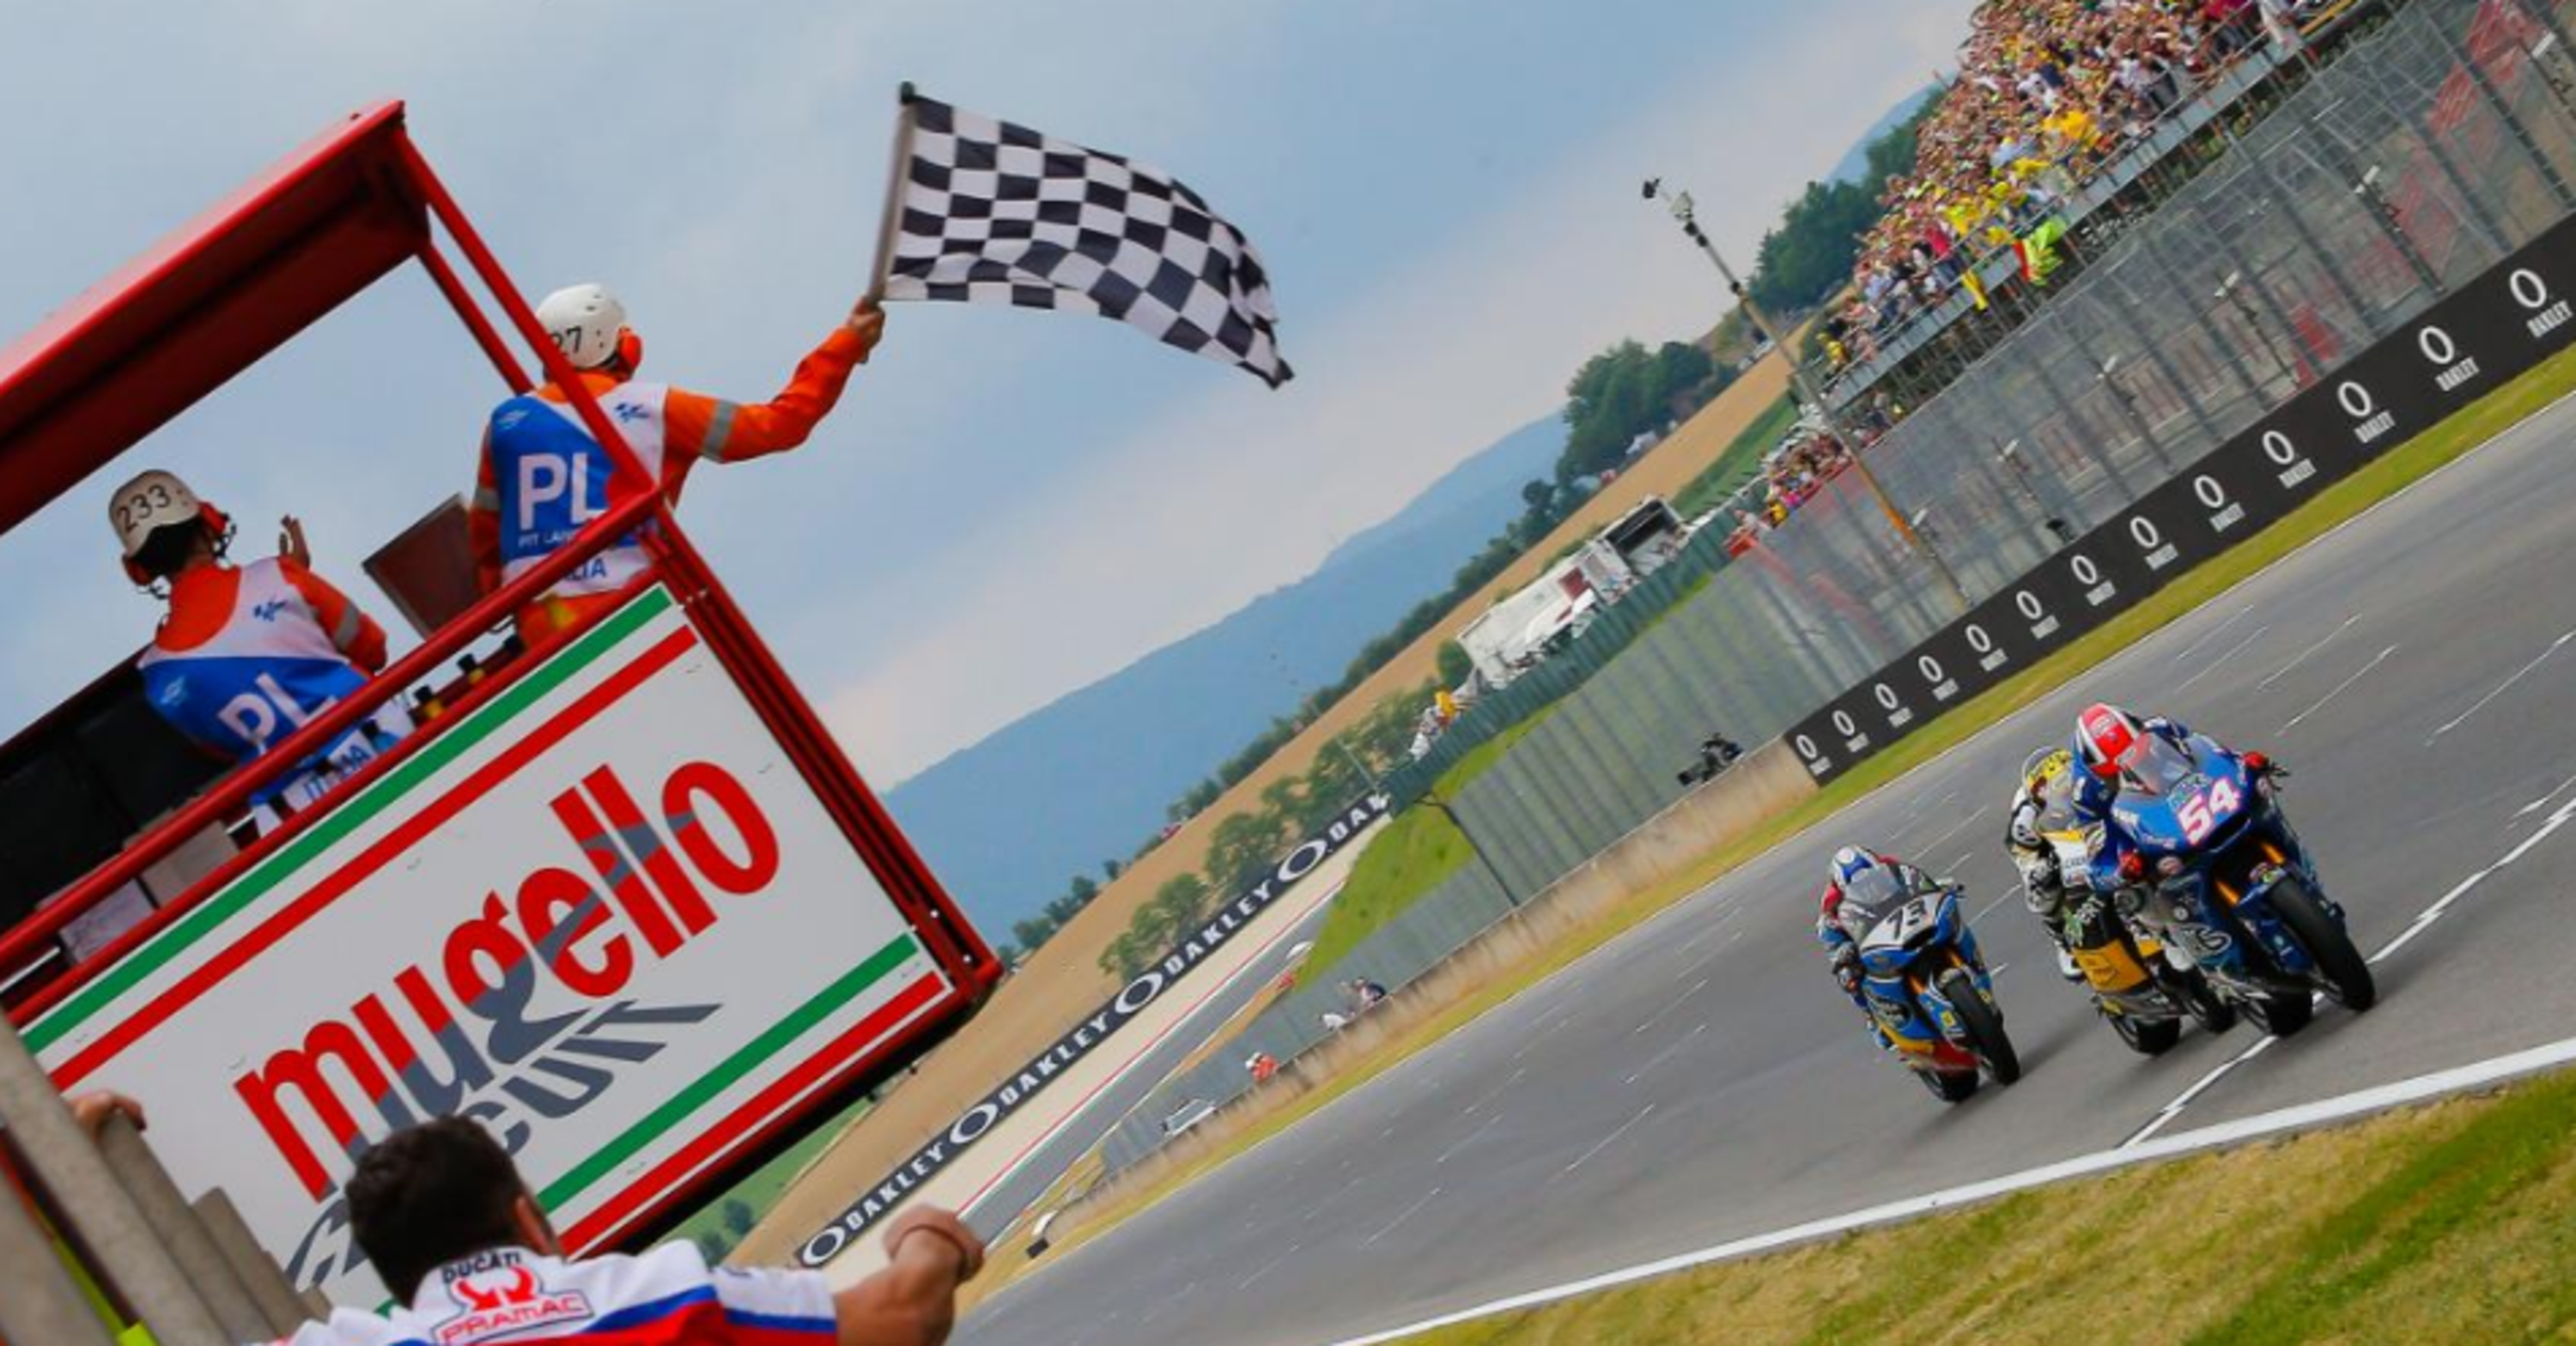 MotoGP 2017.  Pasini e Migno vincono in Moto2 e Moto3